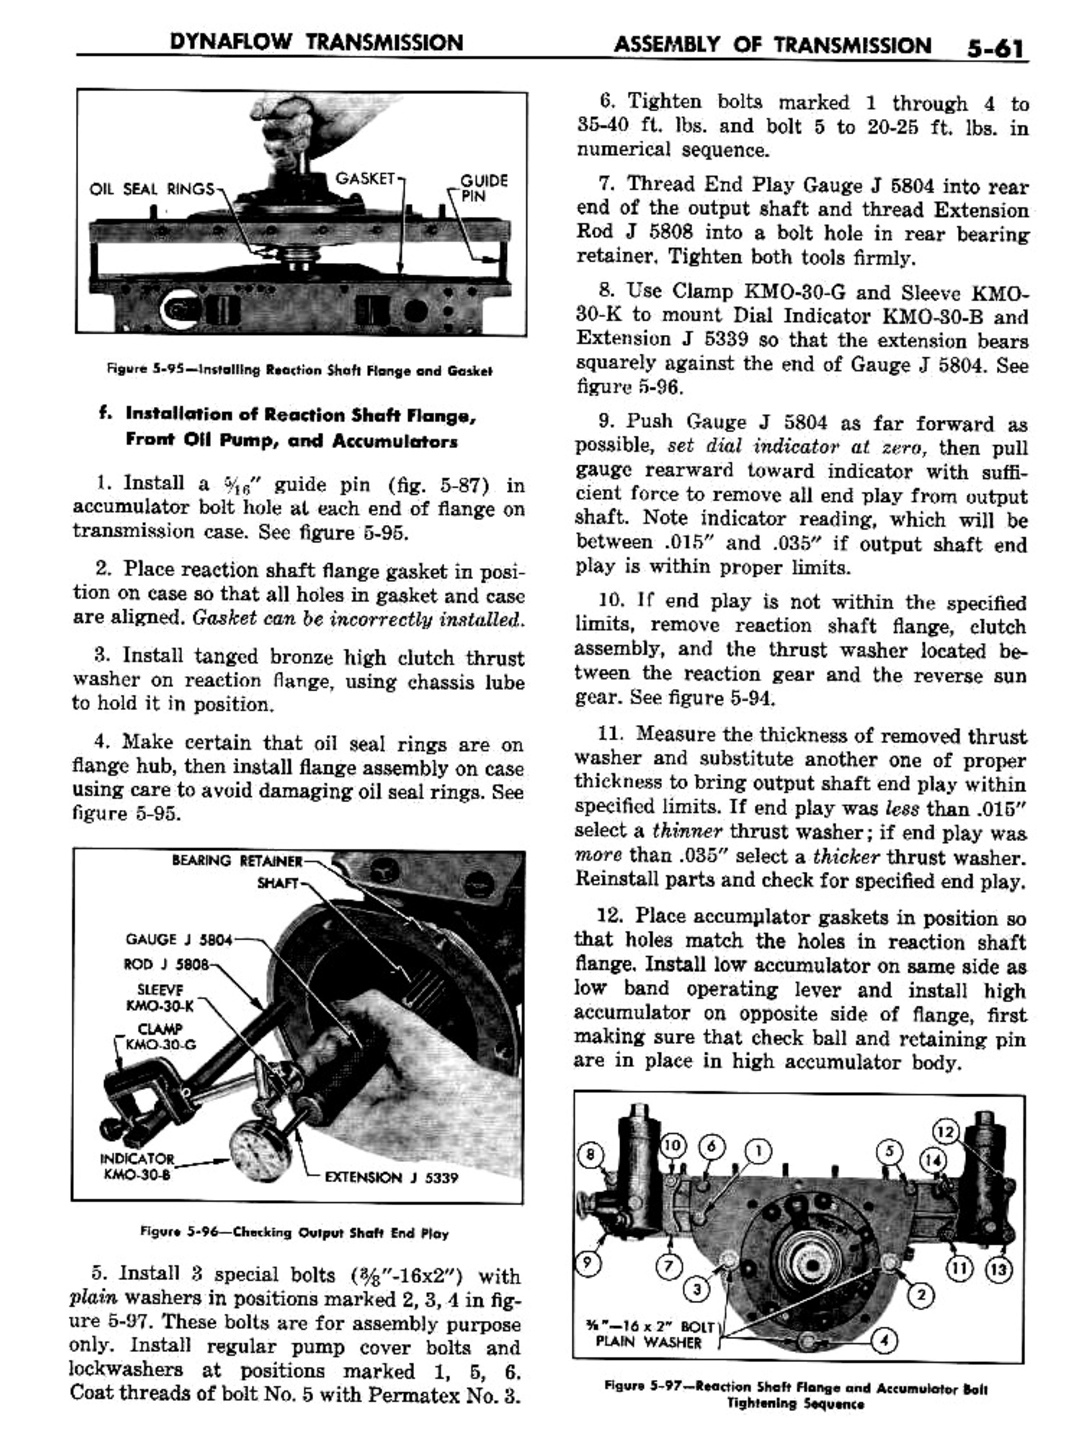 n_06 1957 Buick Shop Manual - Dynaflow-061-061.jpg